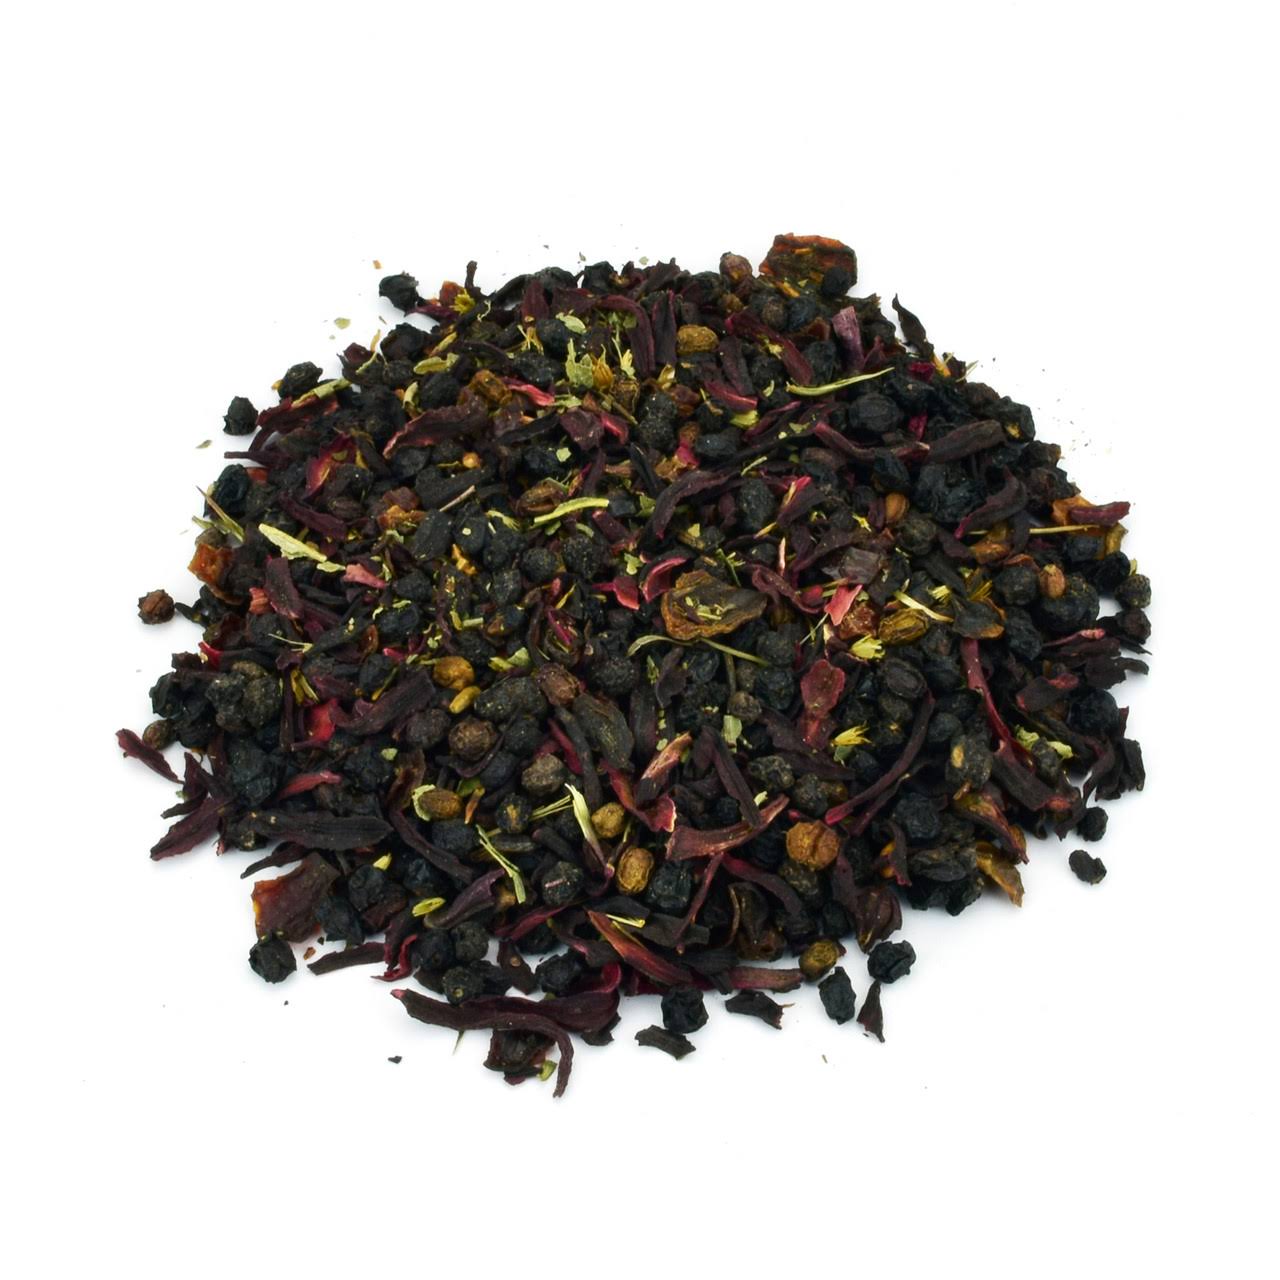 Starwest Botanicals Elderberry Support Tea Organic 4 oz